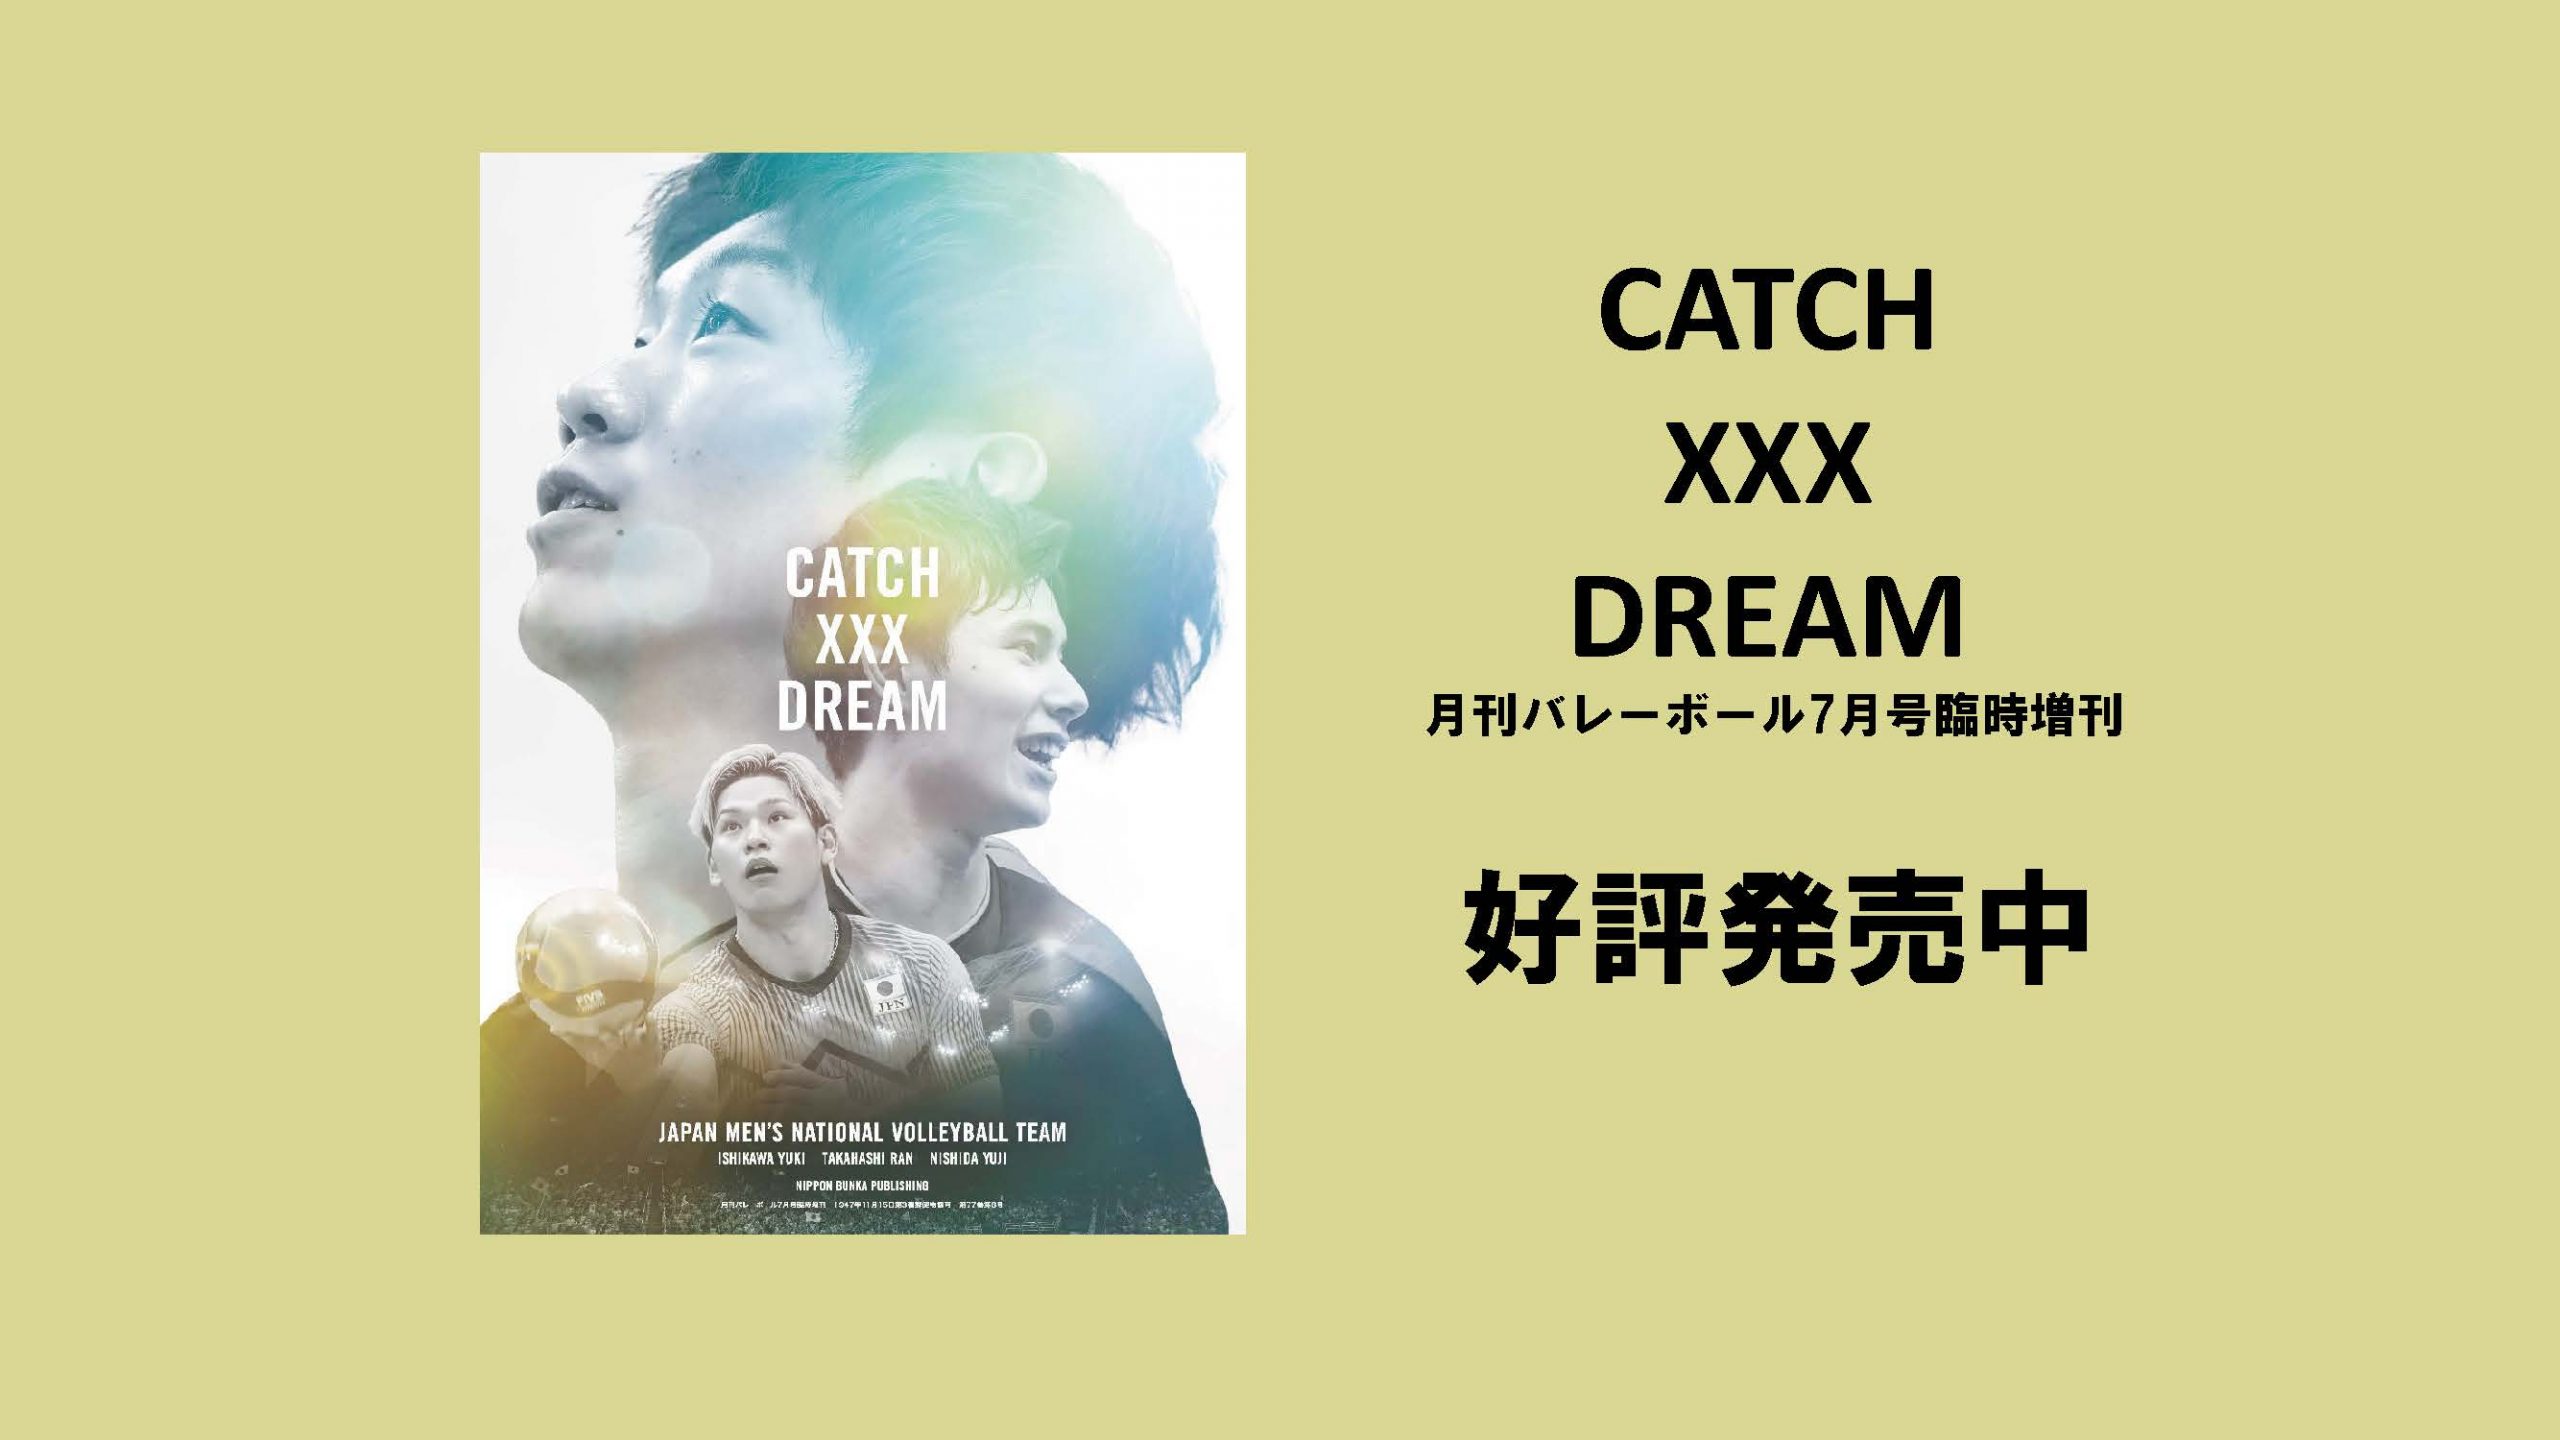 CATCH XXX DREAM